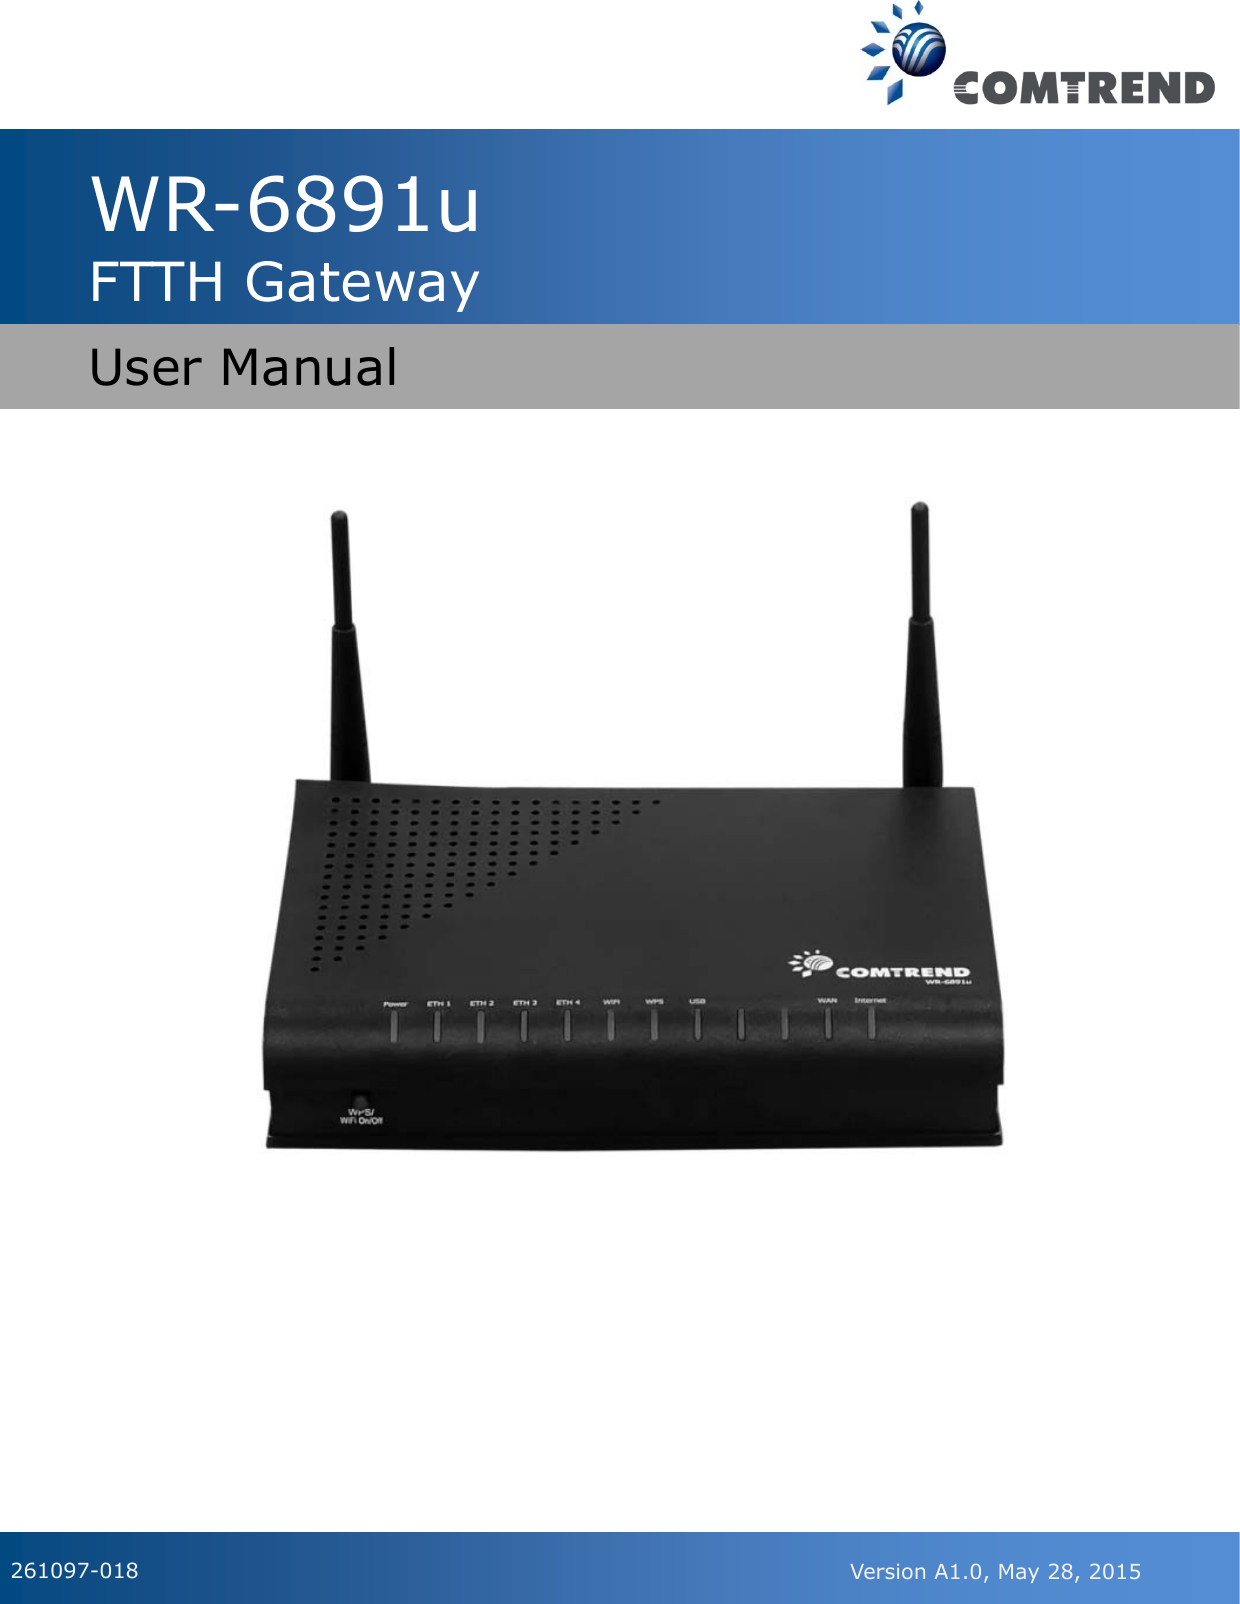                                                                                                                                                                                                                                                                                                                                                                                                                                                                                                                                                                                  WR-6891u FTTH Gateway   User Manual 261097-018 Version A1.0, May 28, 2015  